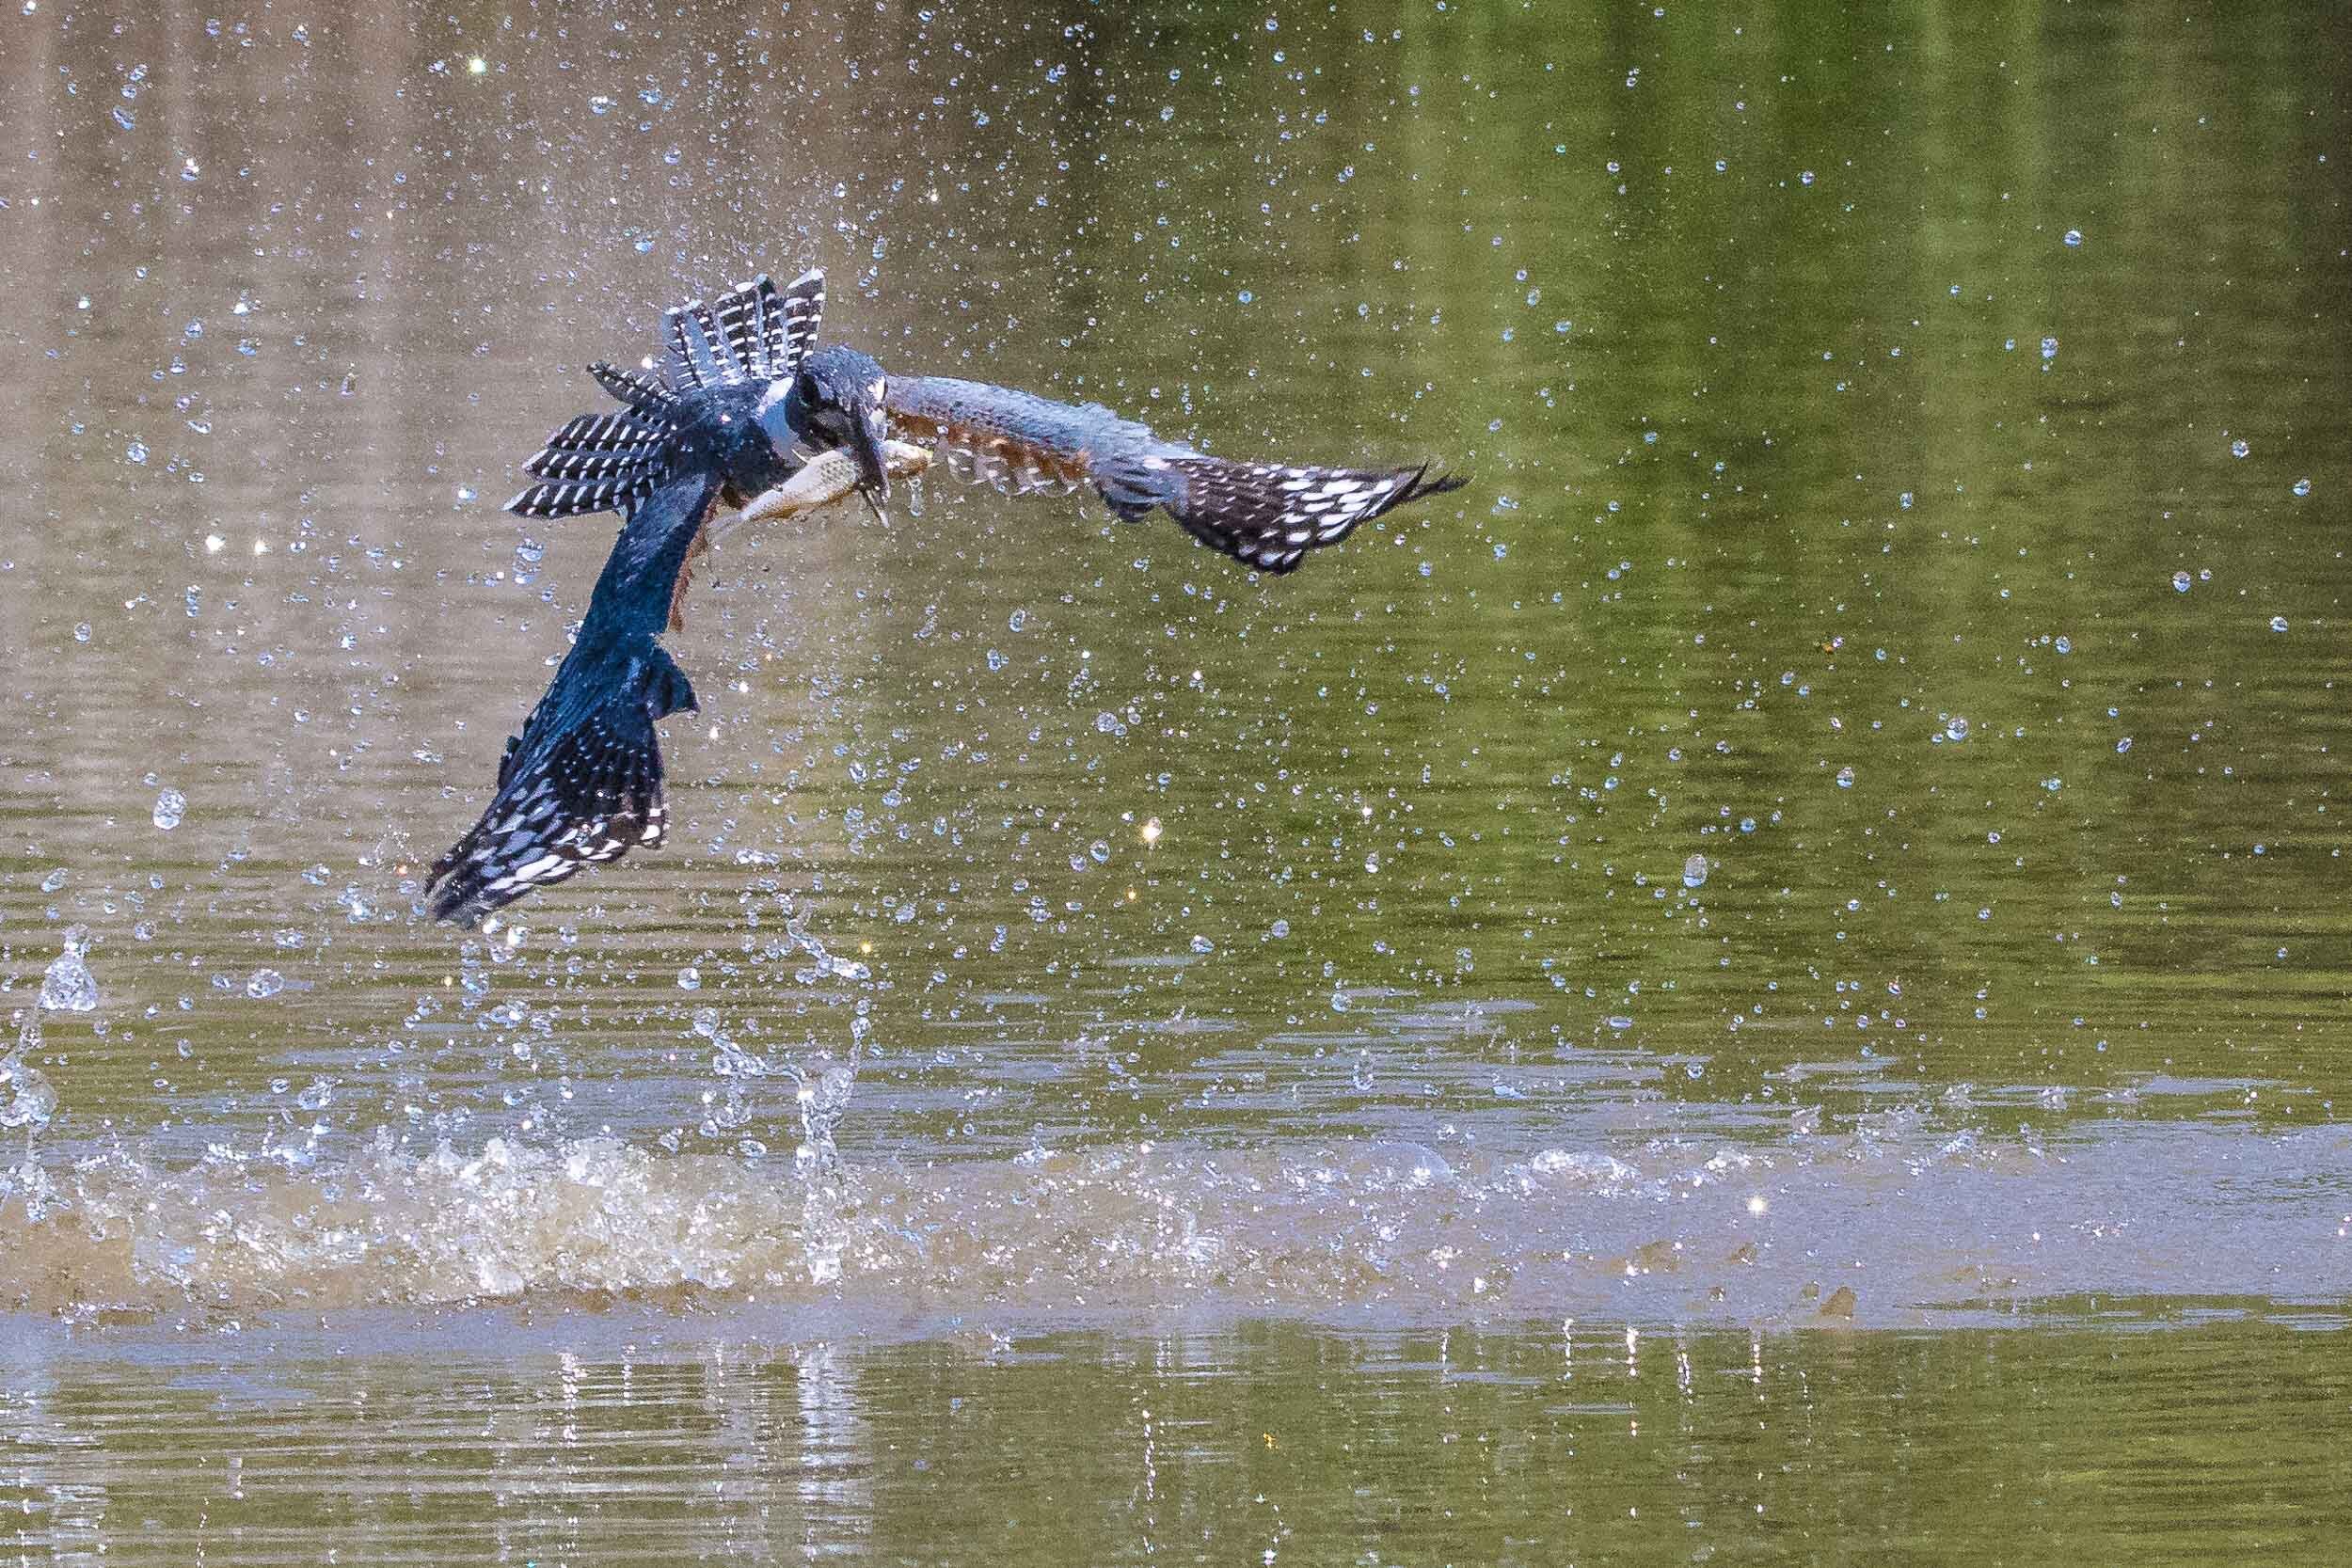 Ringed kingfisher catching a fish, SouthWild Pantanal Lodge, Brazil